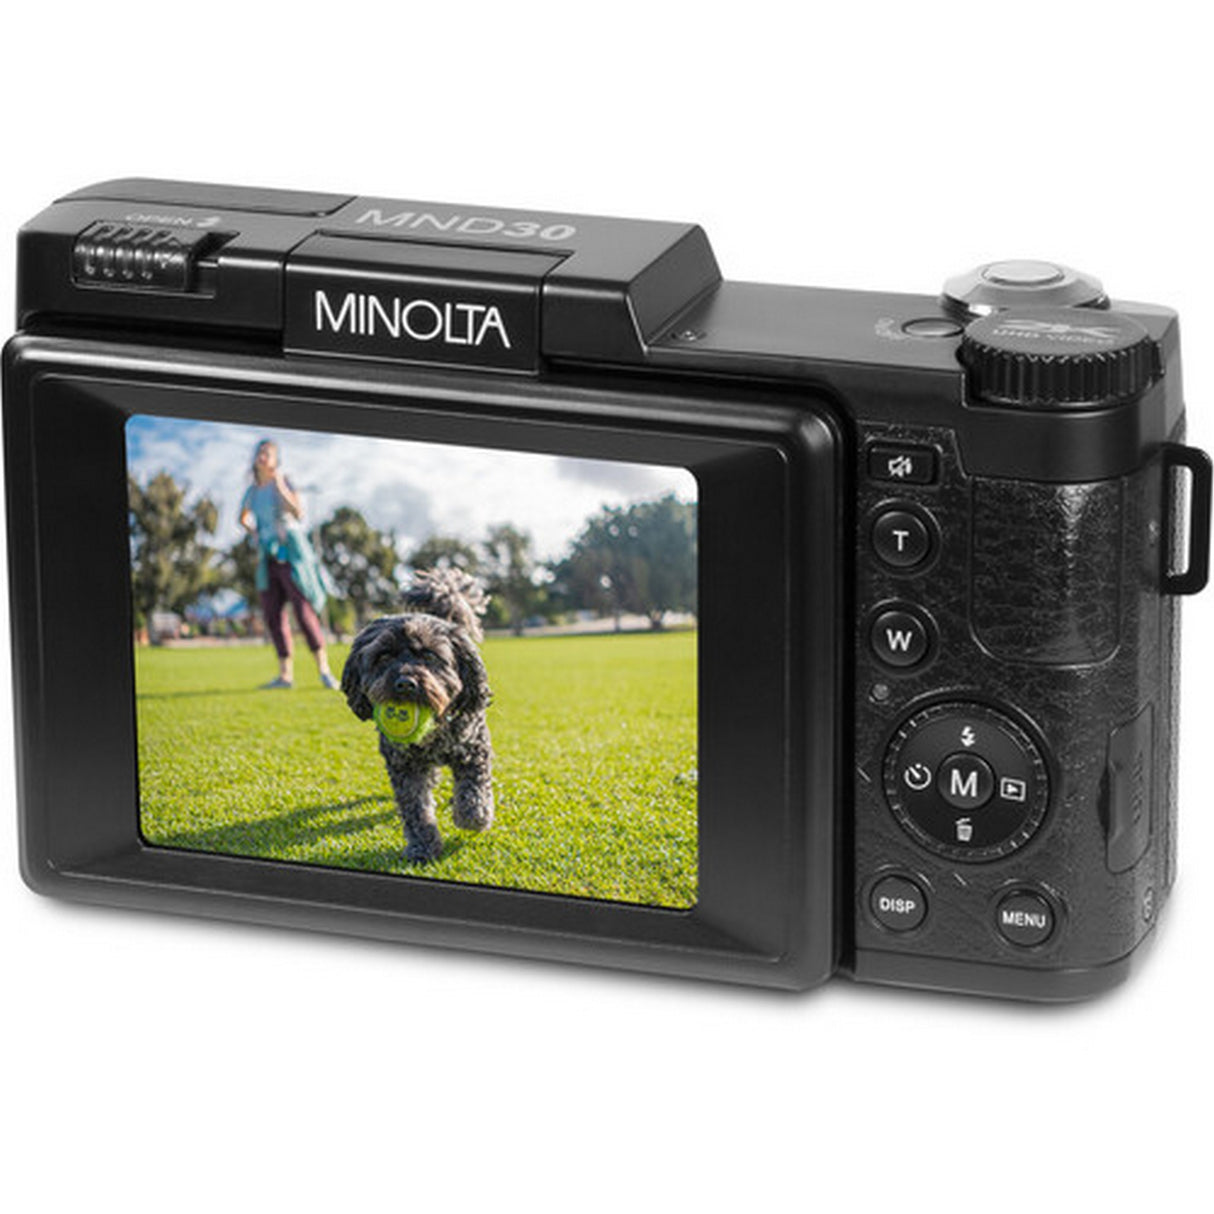 Minolta MND30 30 MP 2.7K Ultra HD Digital Camera, Black